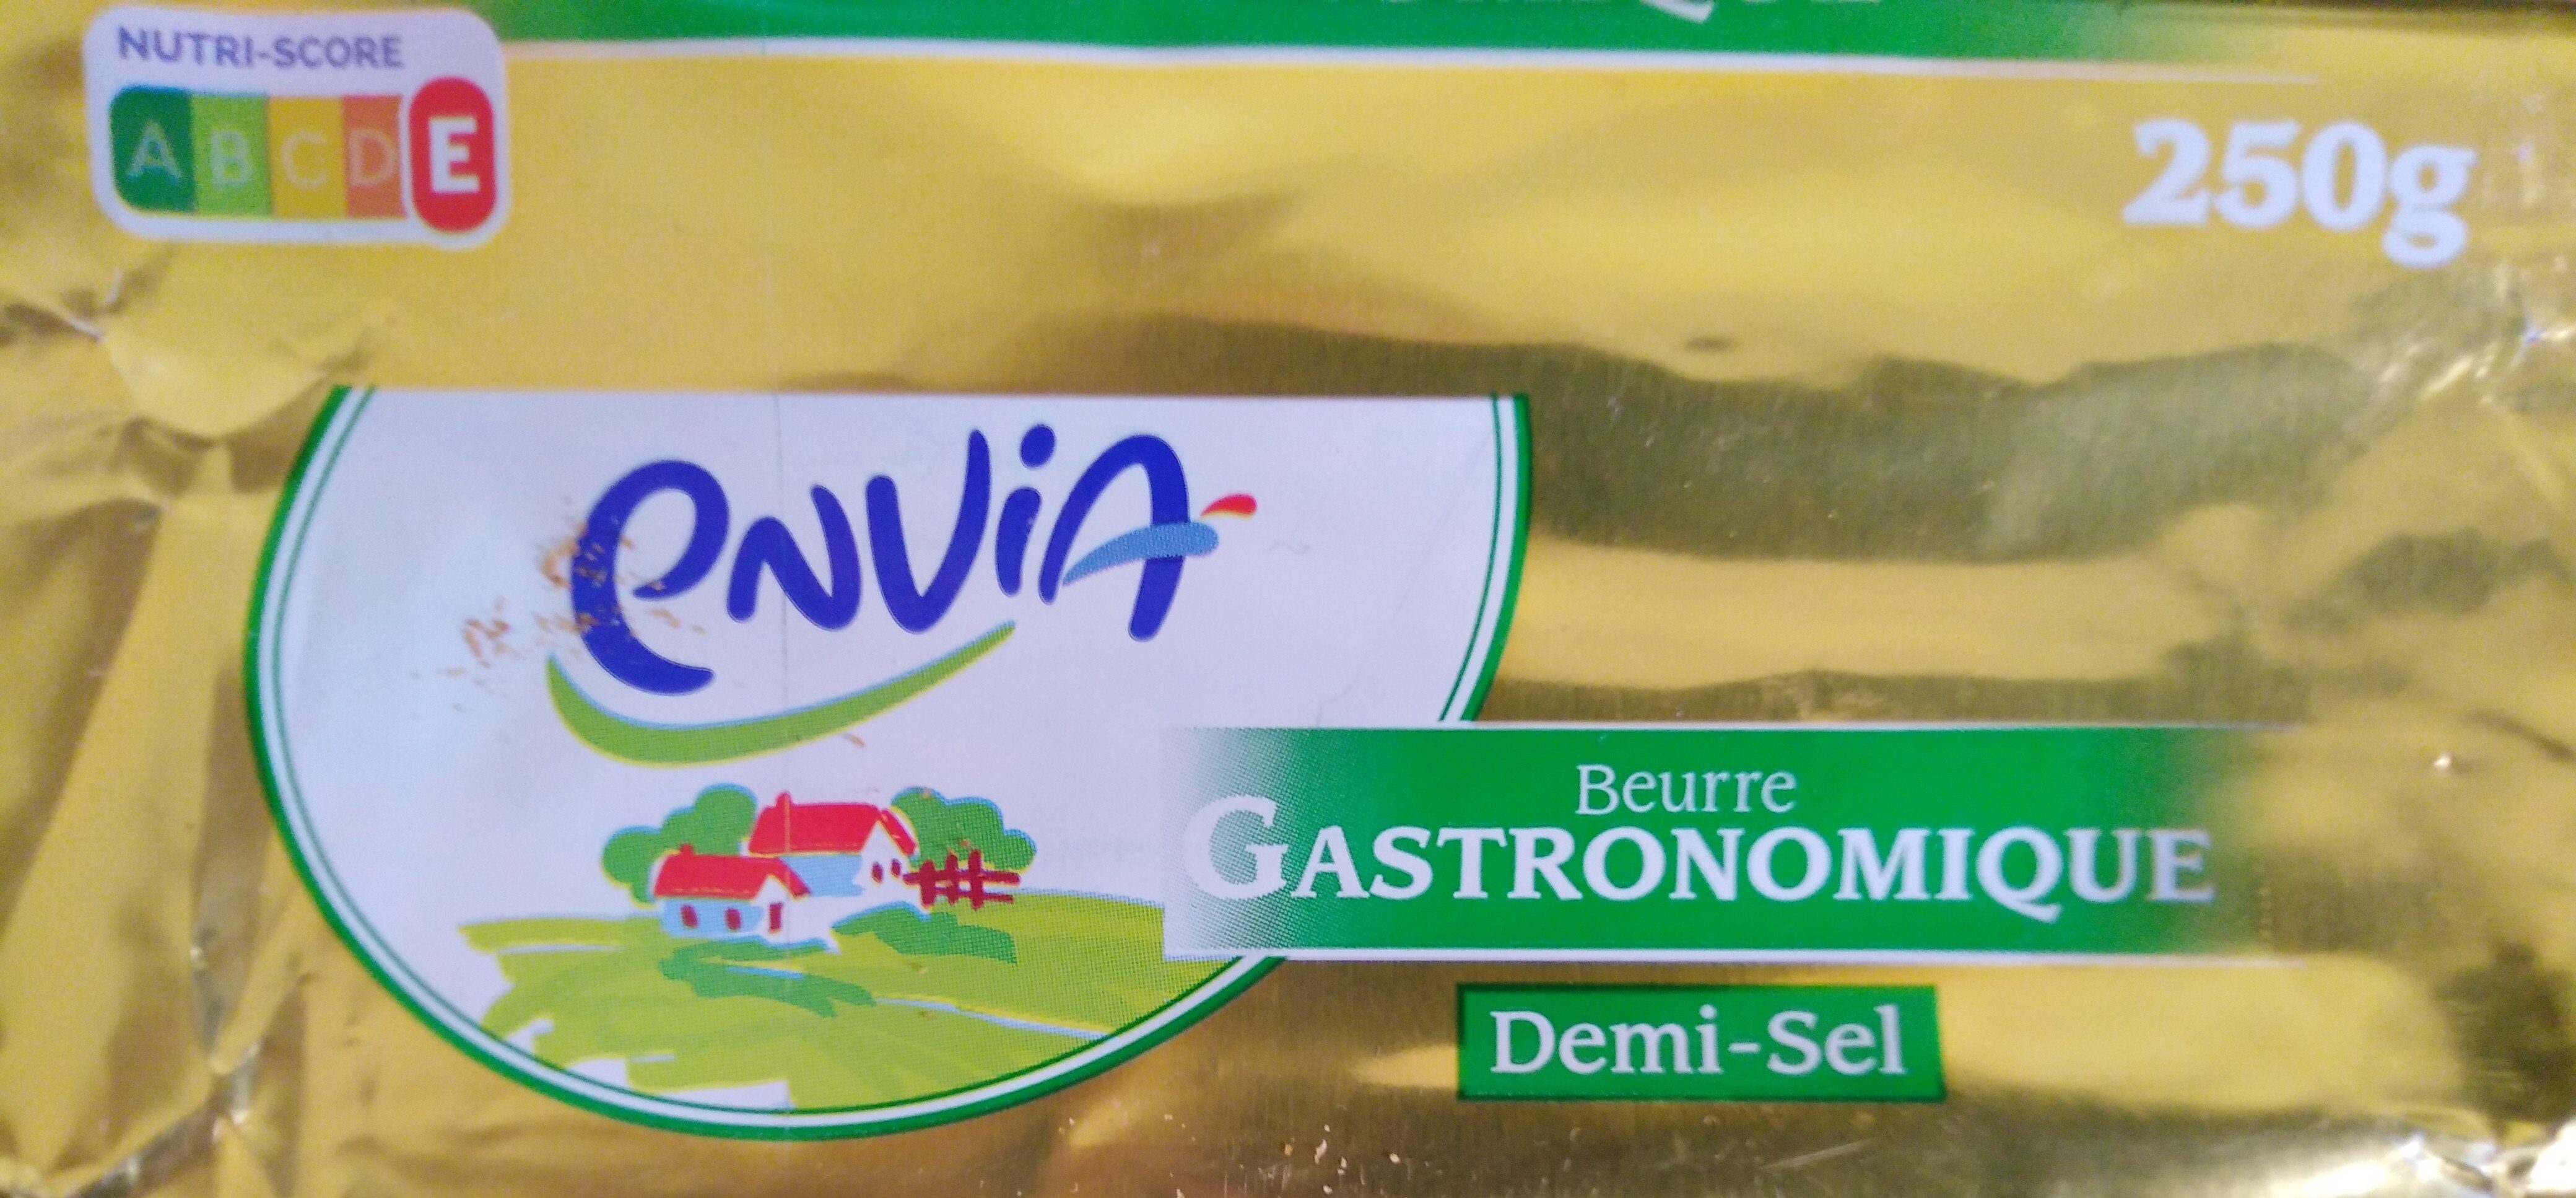 Beurre gastronomique demi sel - Product - fr